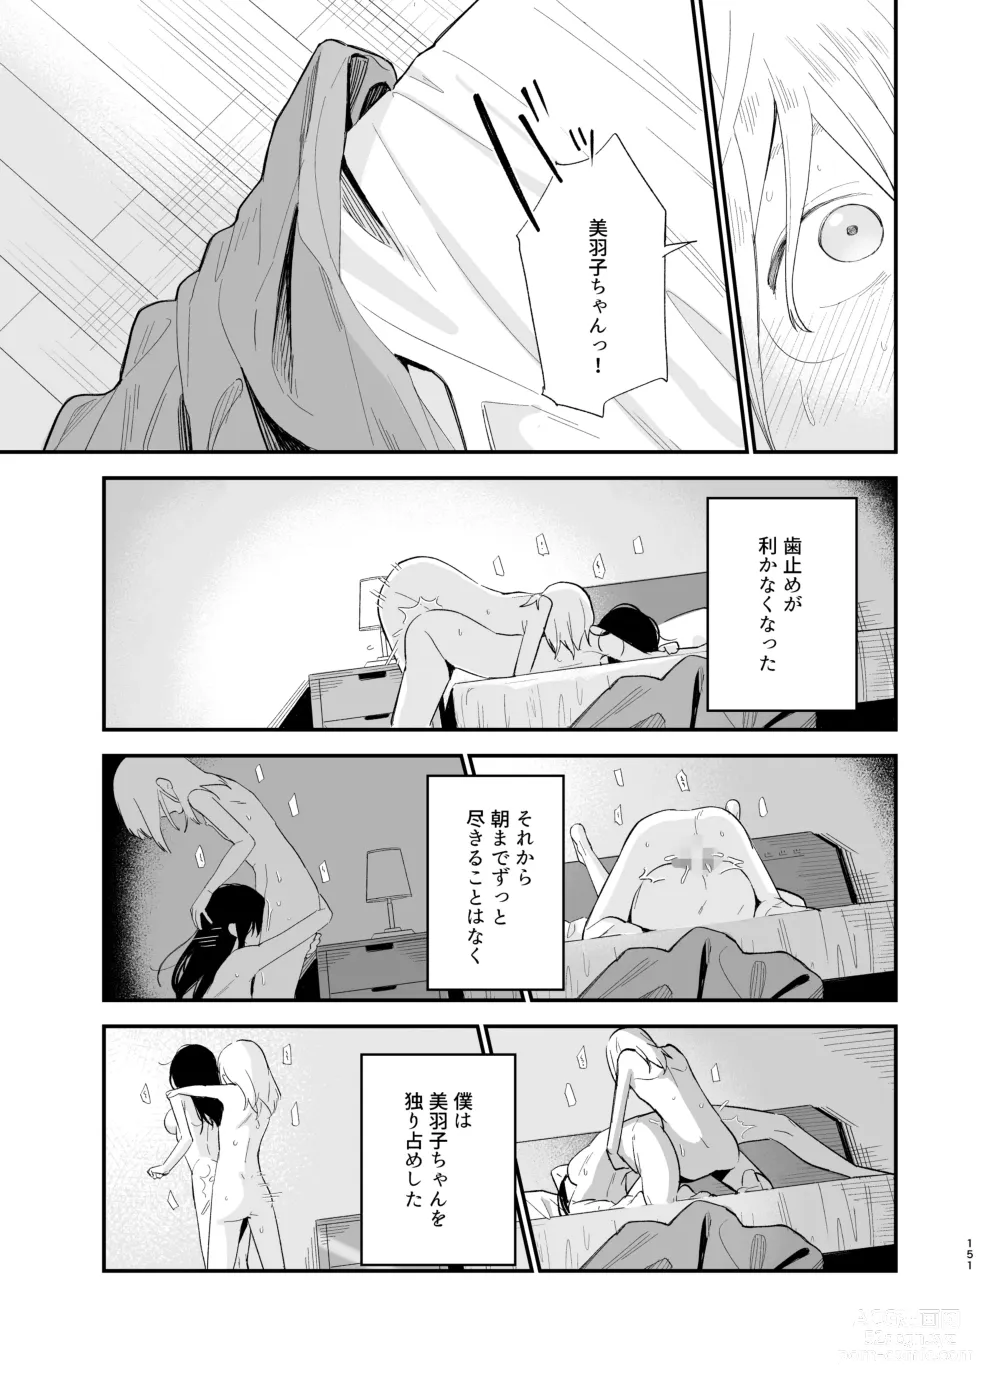 Page 150 of doujinshi Soushi Souai.